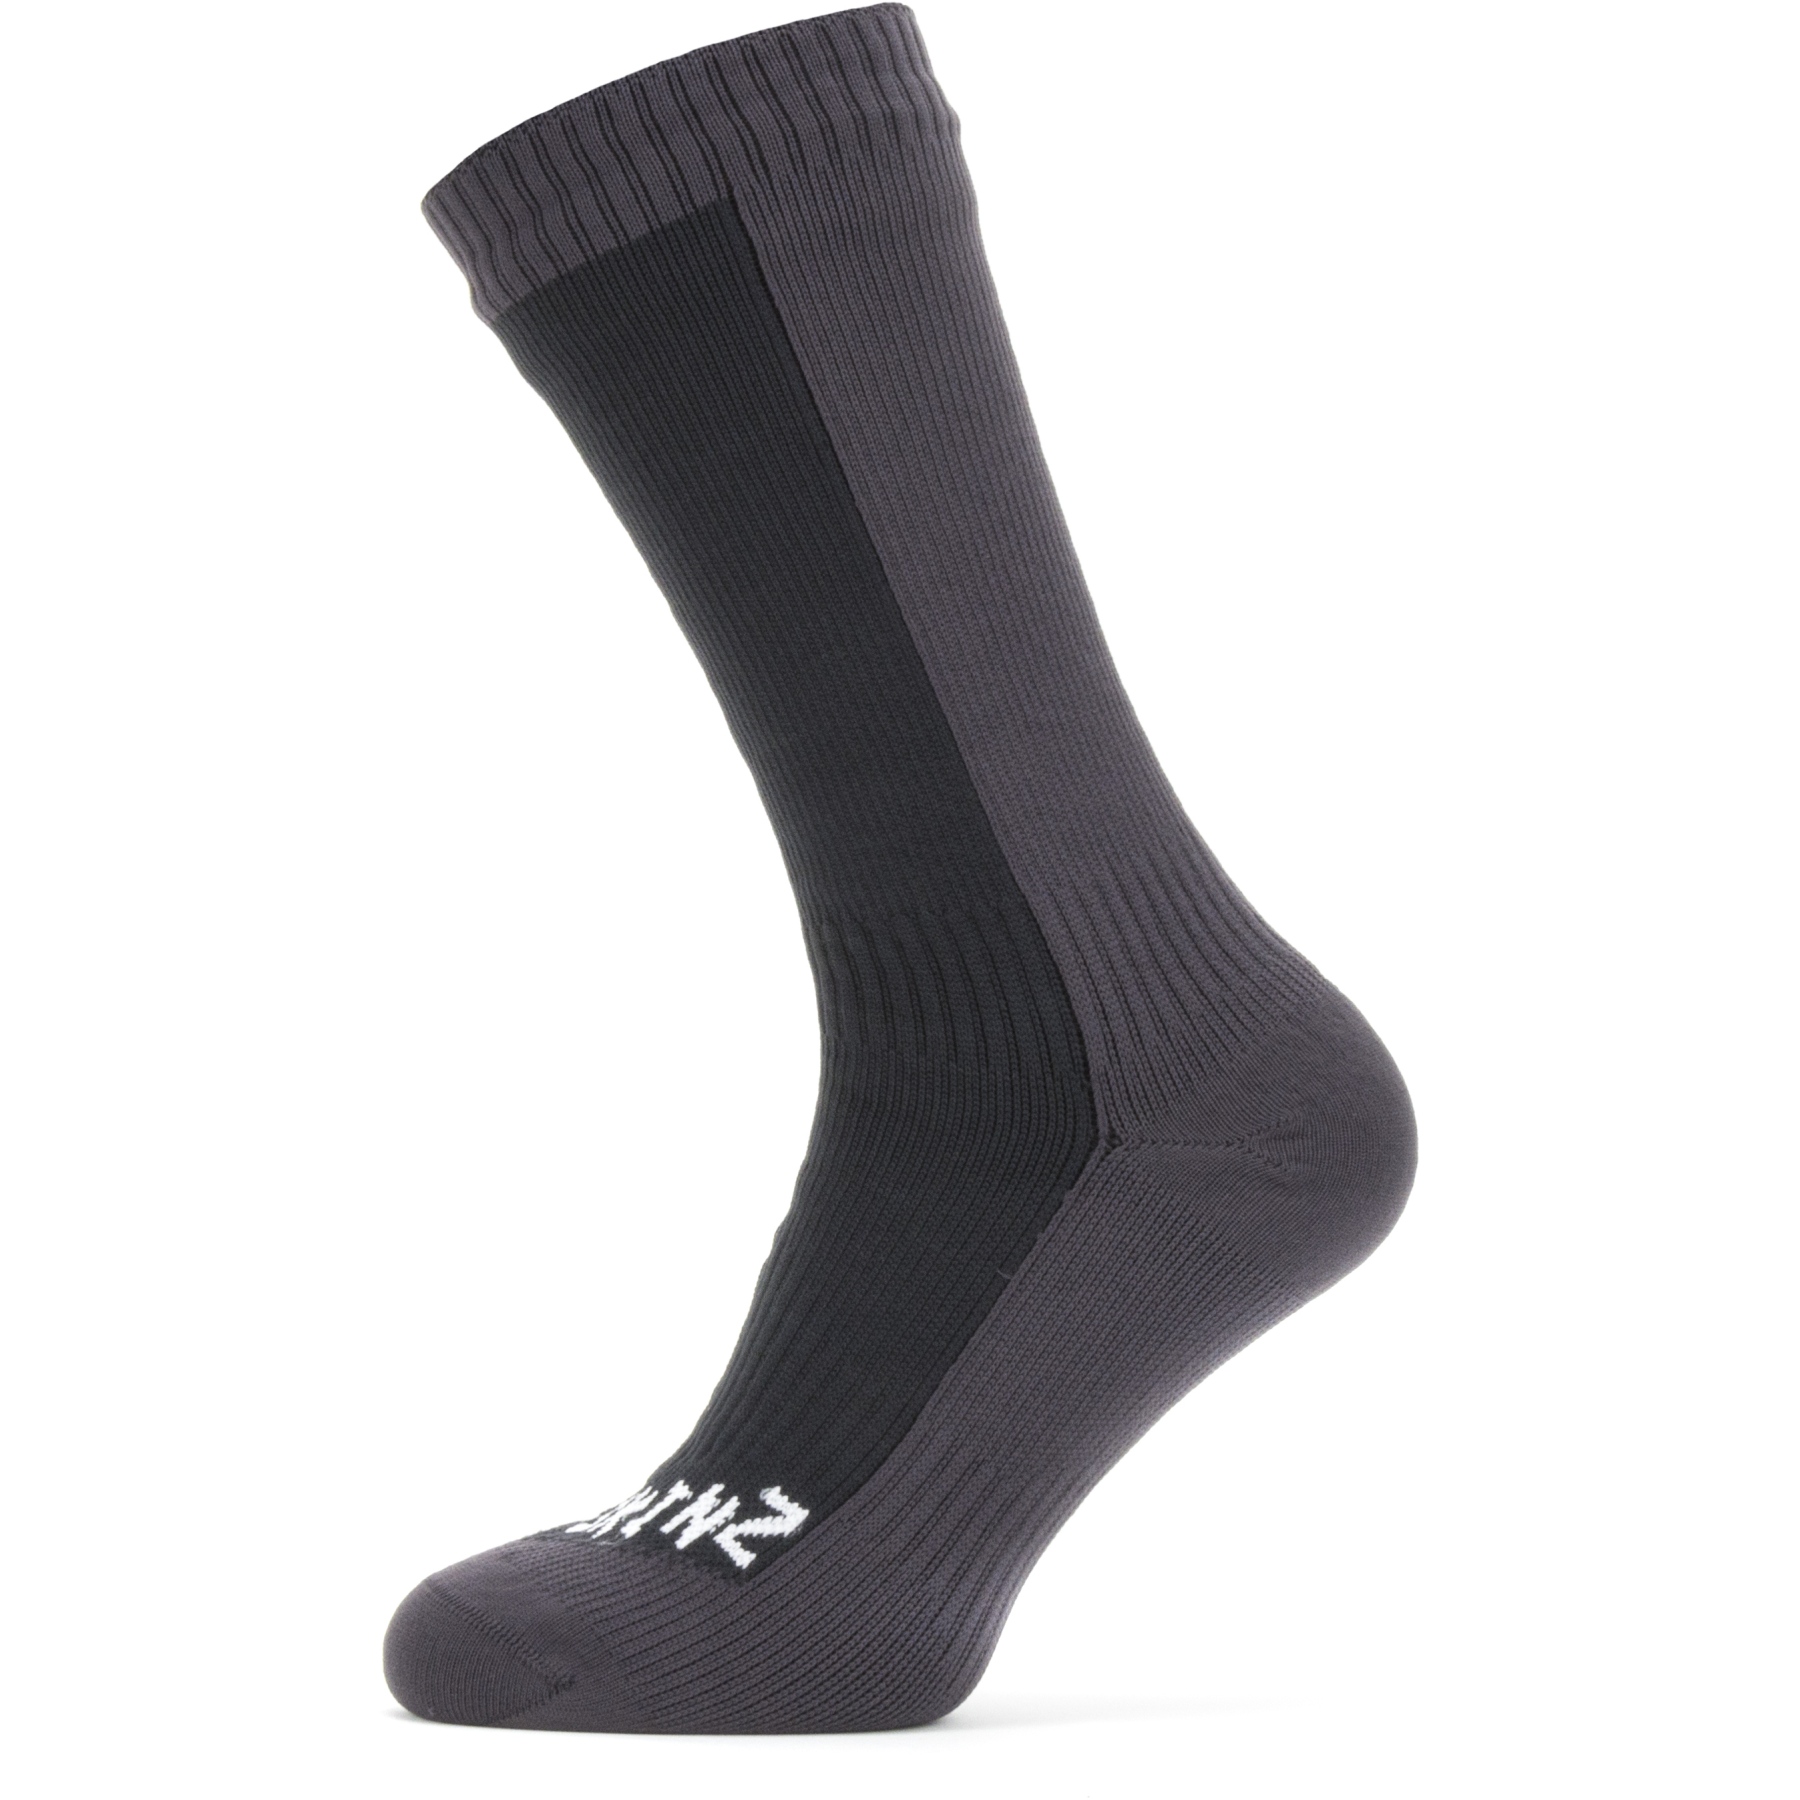 Produktbild von SealSkinz Starston Wasserdichte, mittellange Socken für kaltes Wetter - Schwarz/Grau